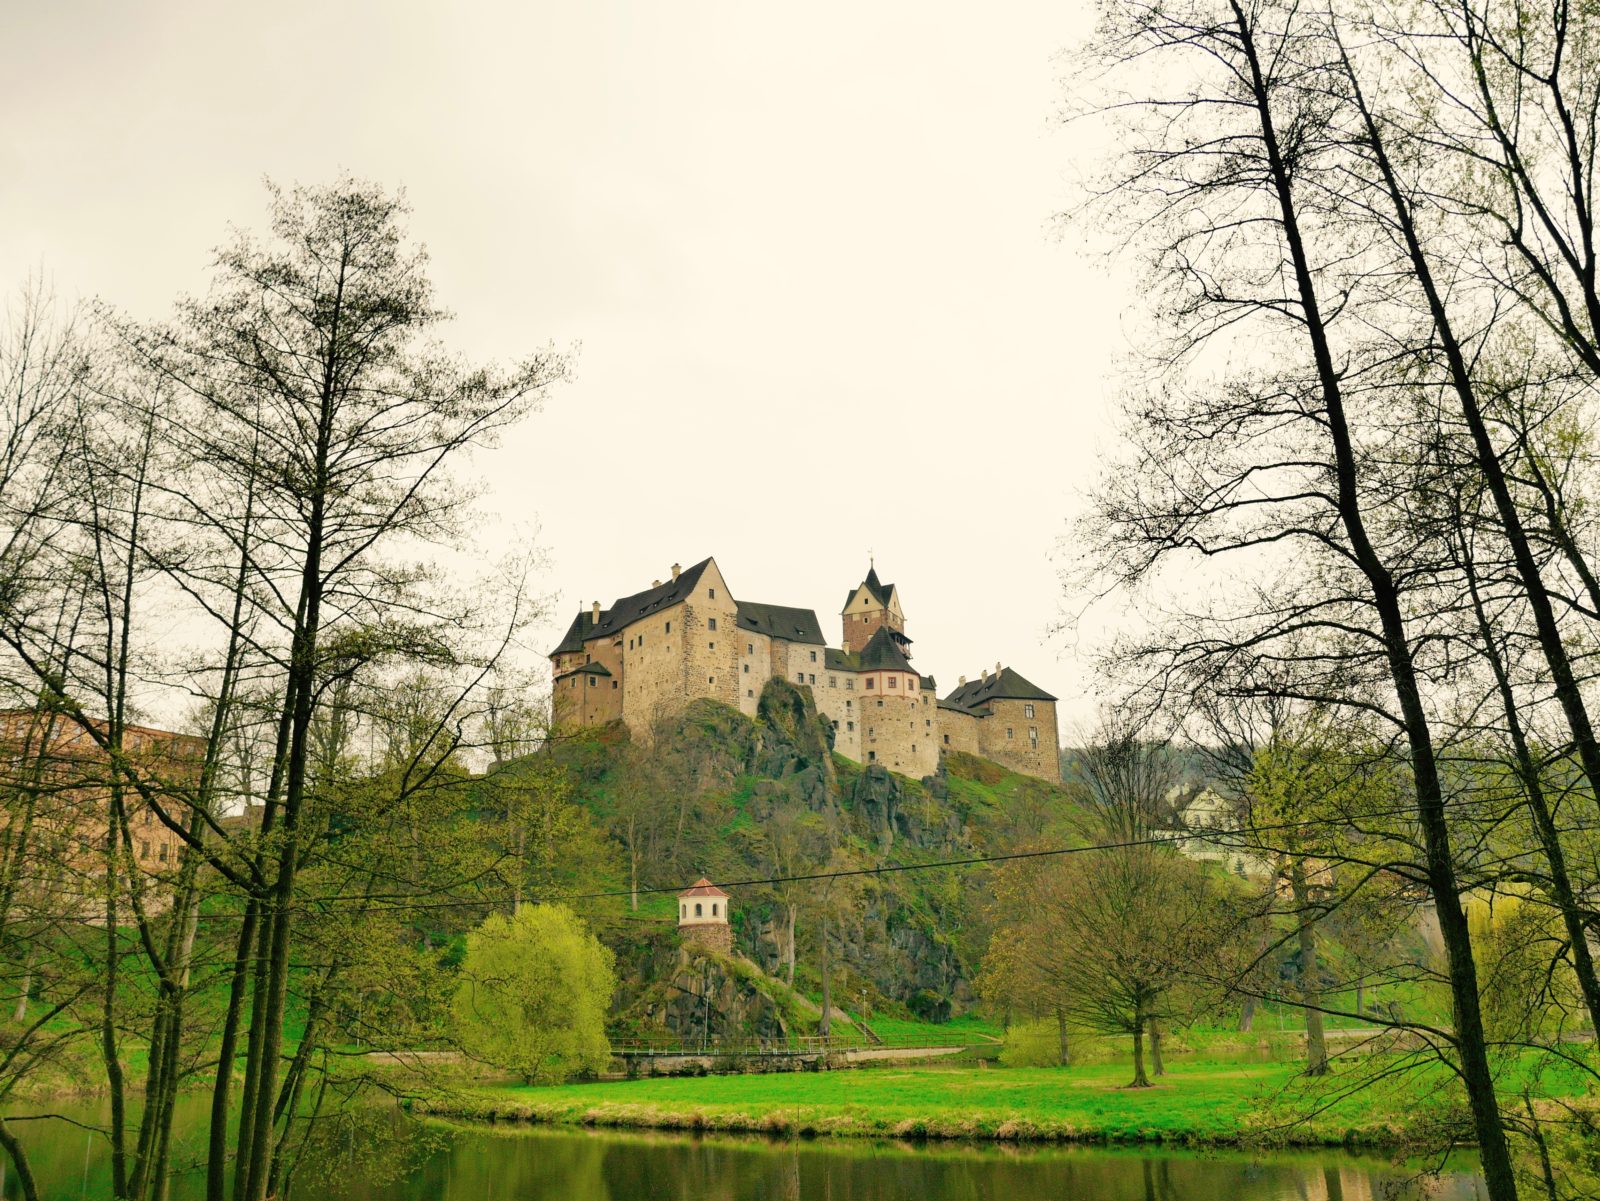 Urlaub in Tschechien. Burg Loket. Drei Ausflüge in die Umgebung von Karlsbad.